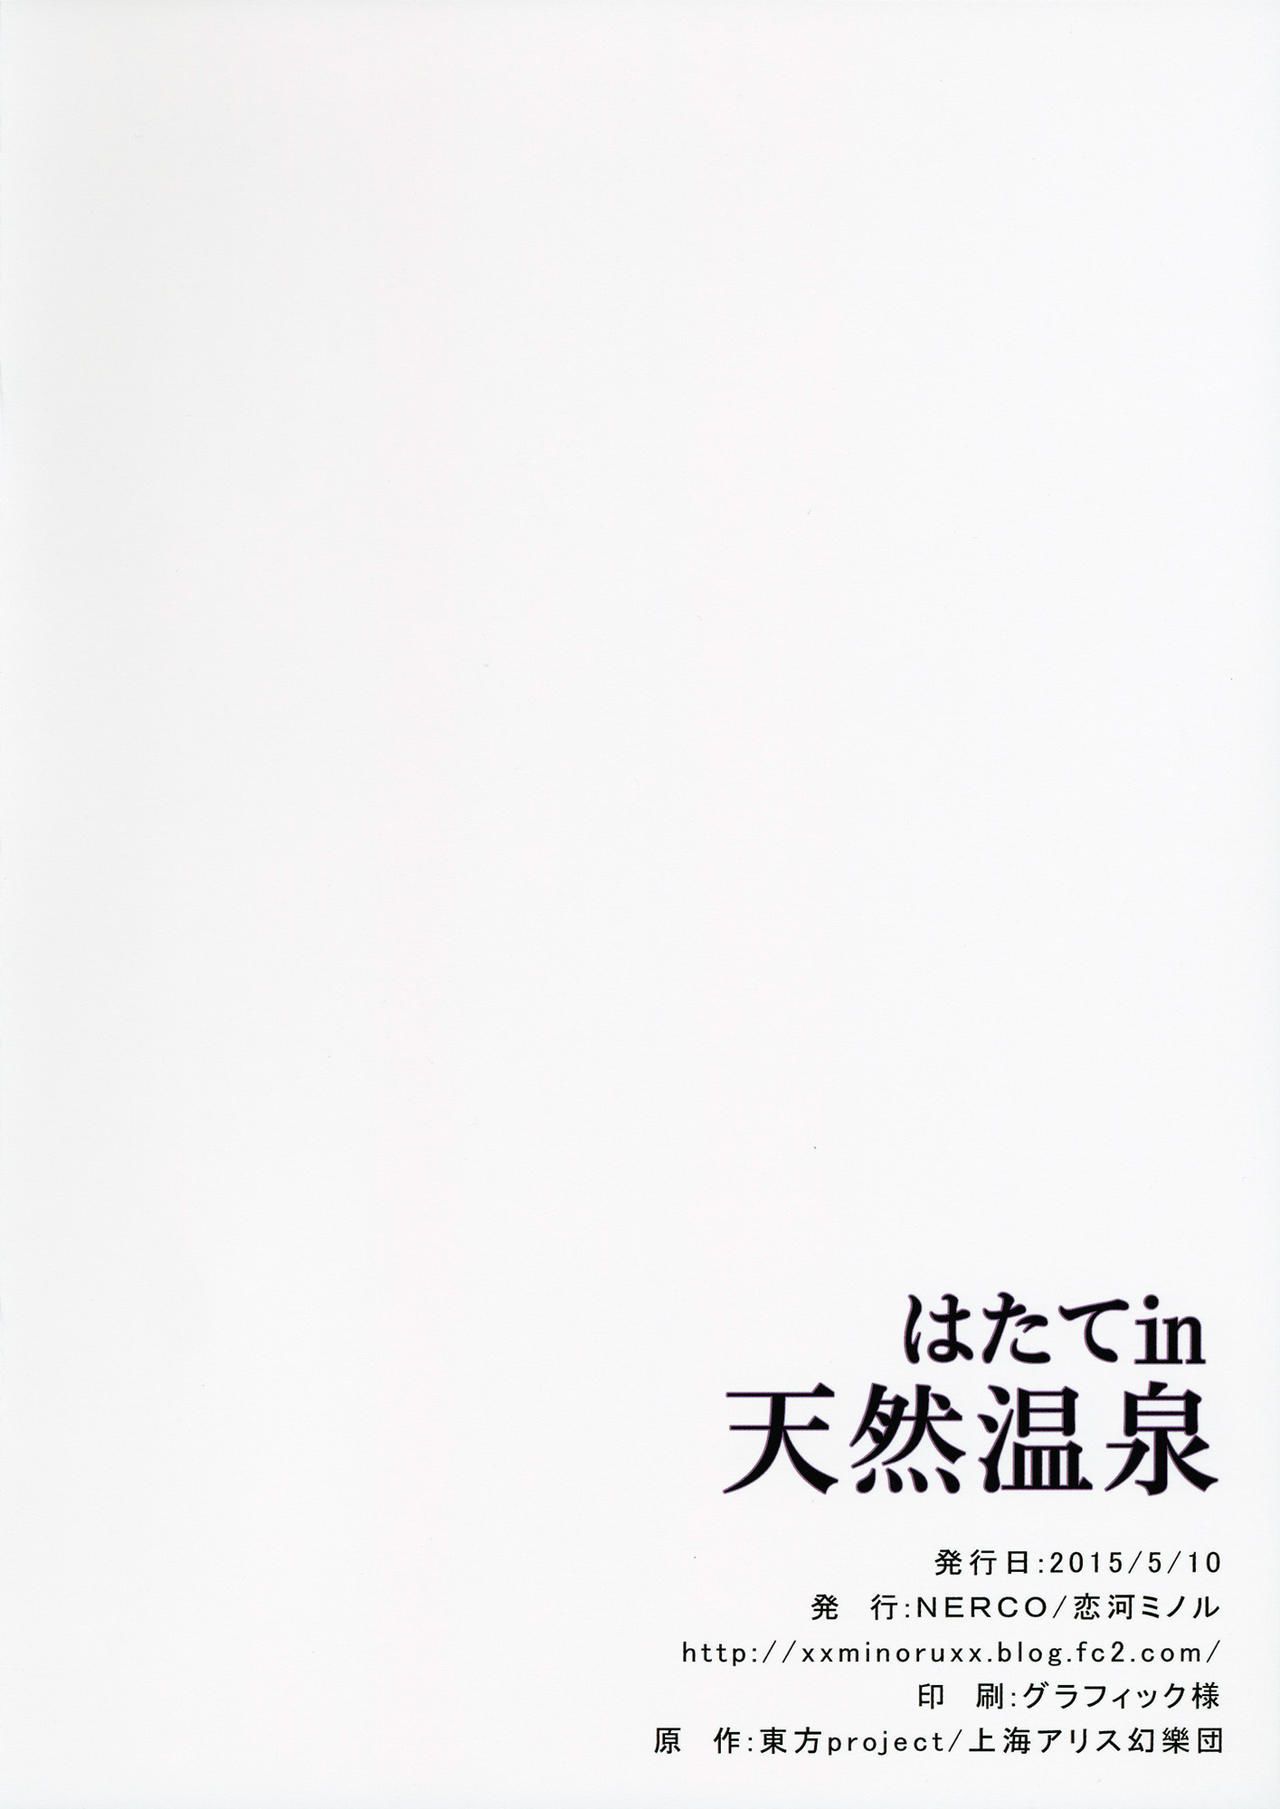 (reitaisai 12) thuốc mê (koikawa minoru) hatate trong tennen Onsen hatate trong tự nhiên Nóng mùa xuân (touhou project)